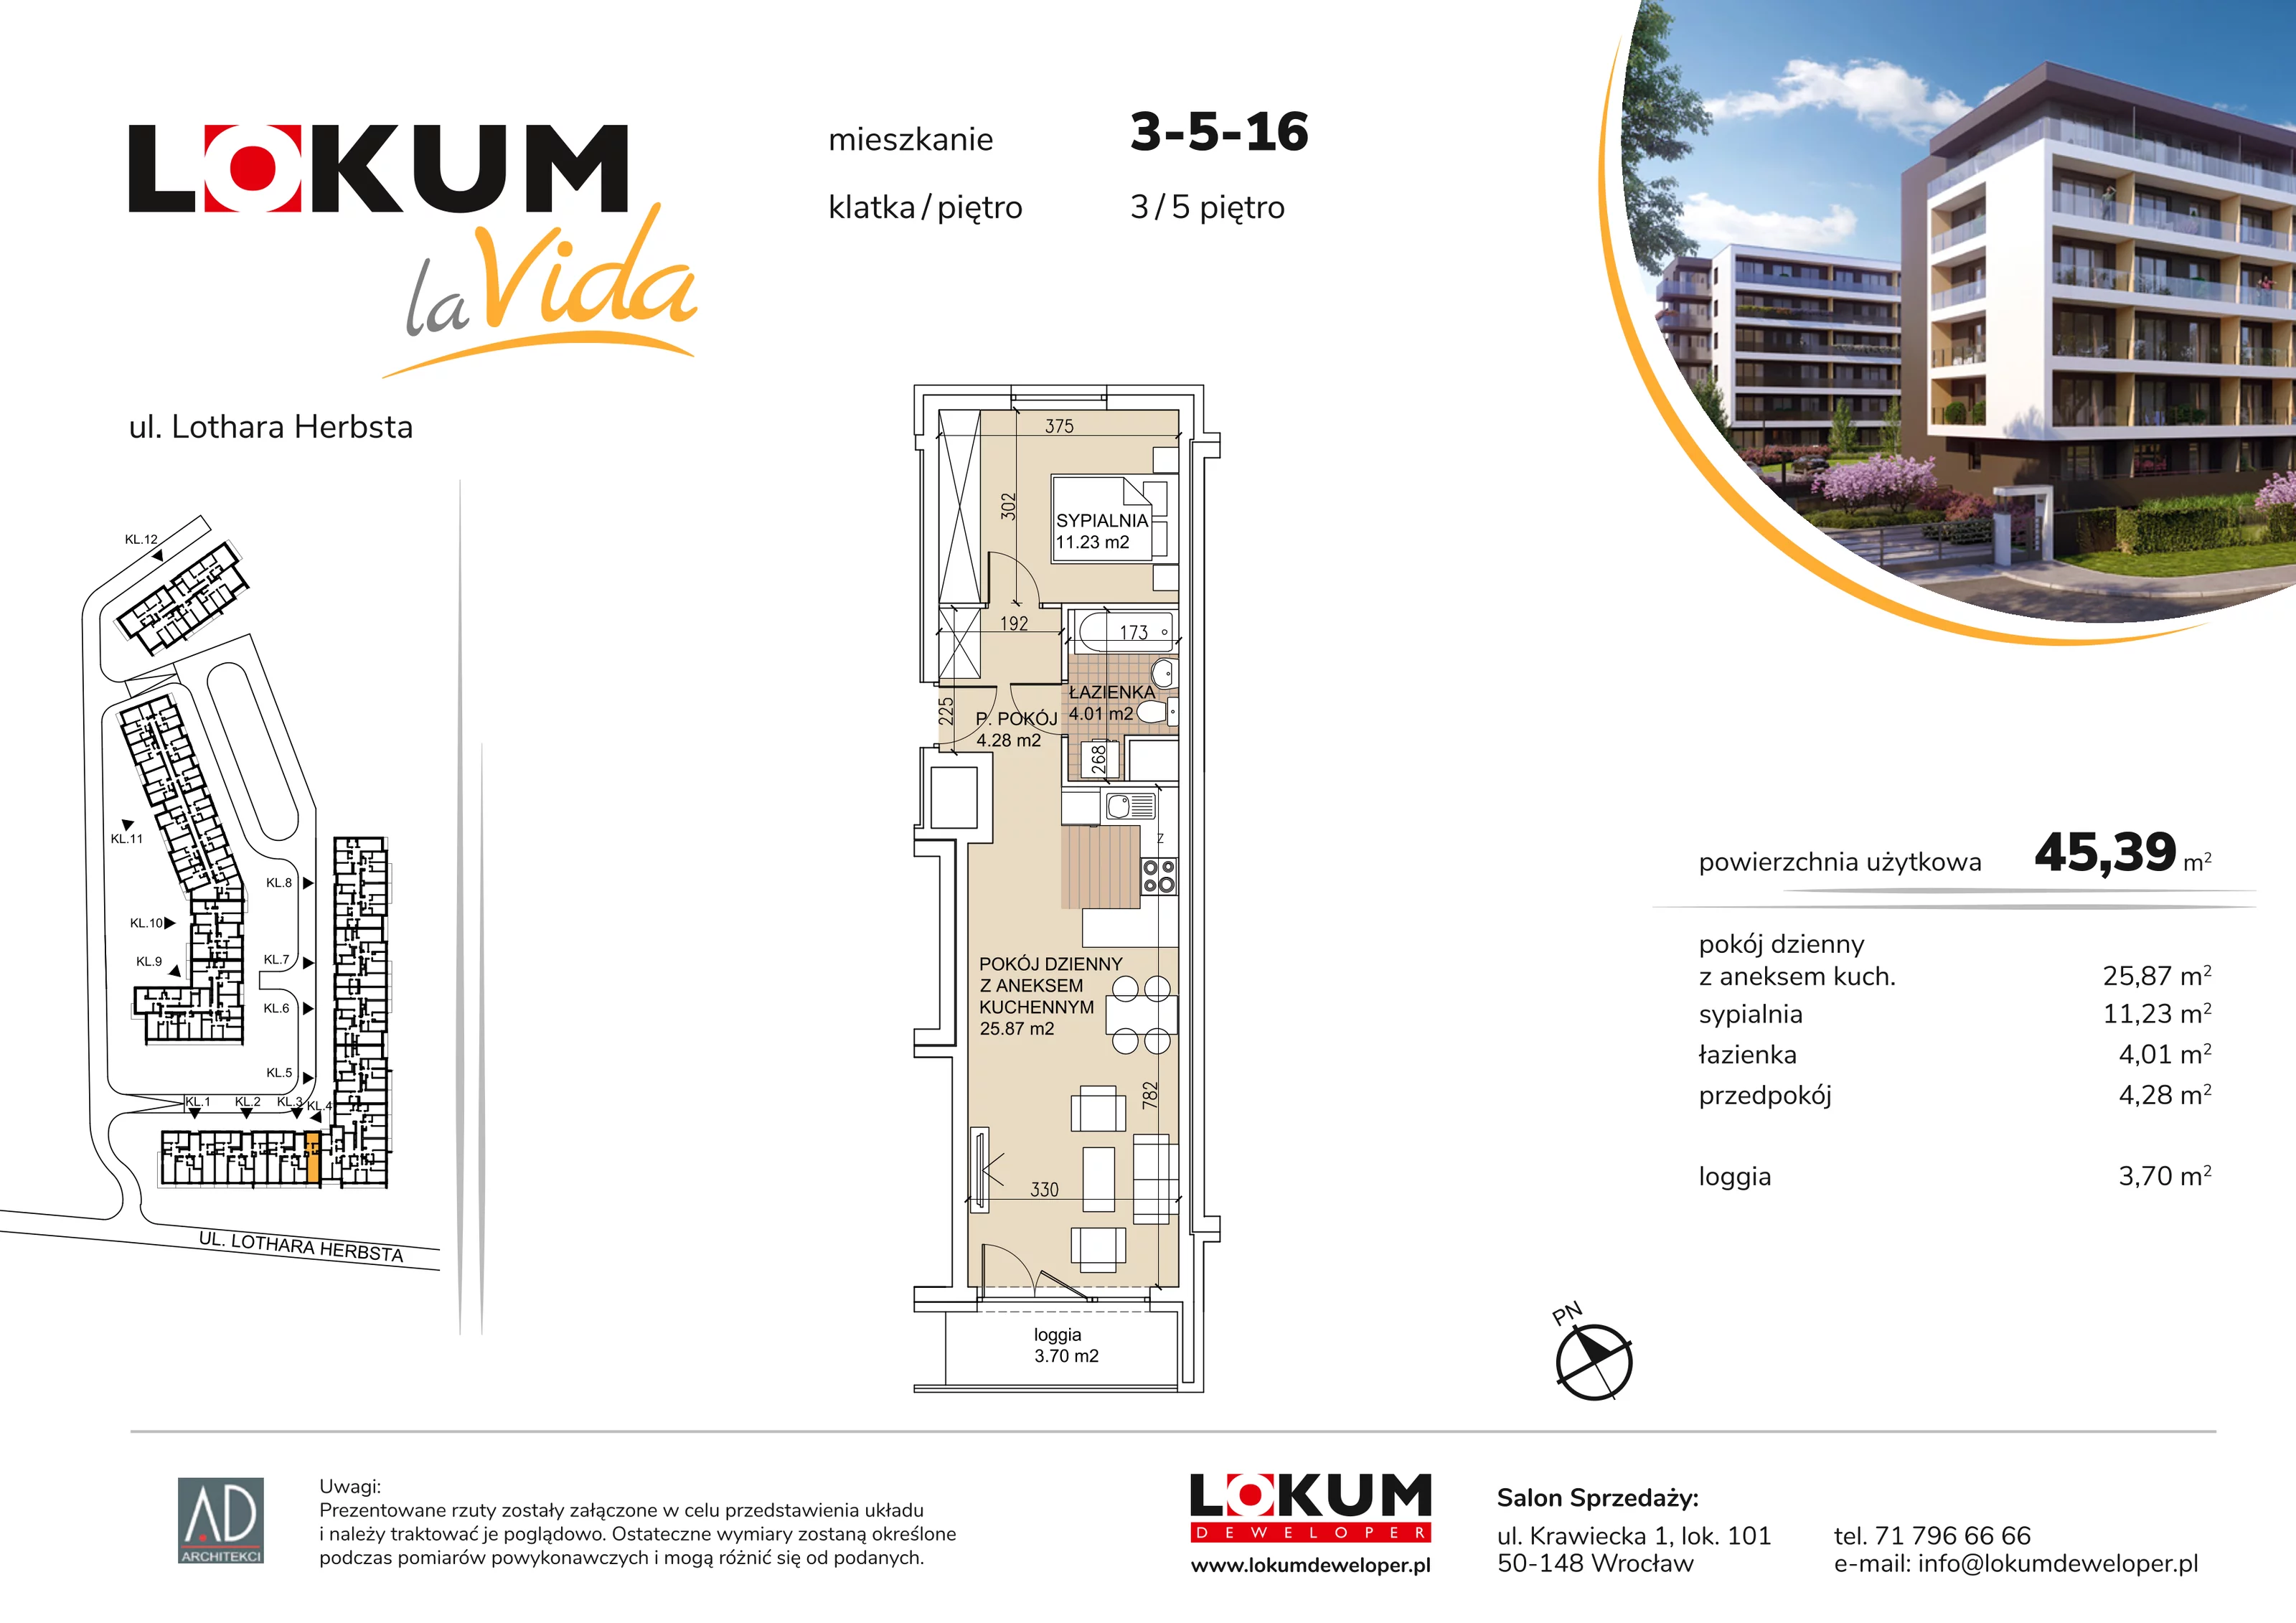 Mieszkanie 45,39 m², piętro 5, oferta nr 3-5-16, Lokum la Vida, Wrocław, Sołtysowice, ul. Lothara Herbsta